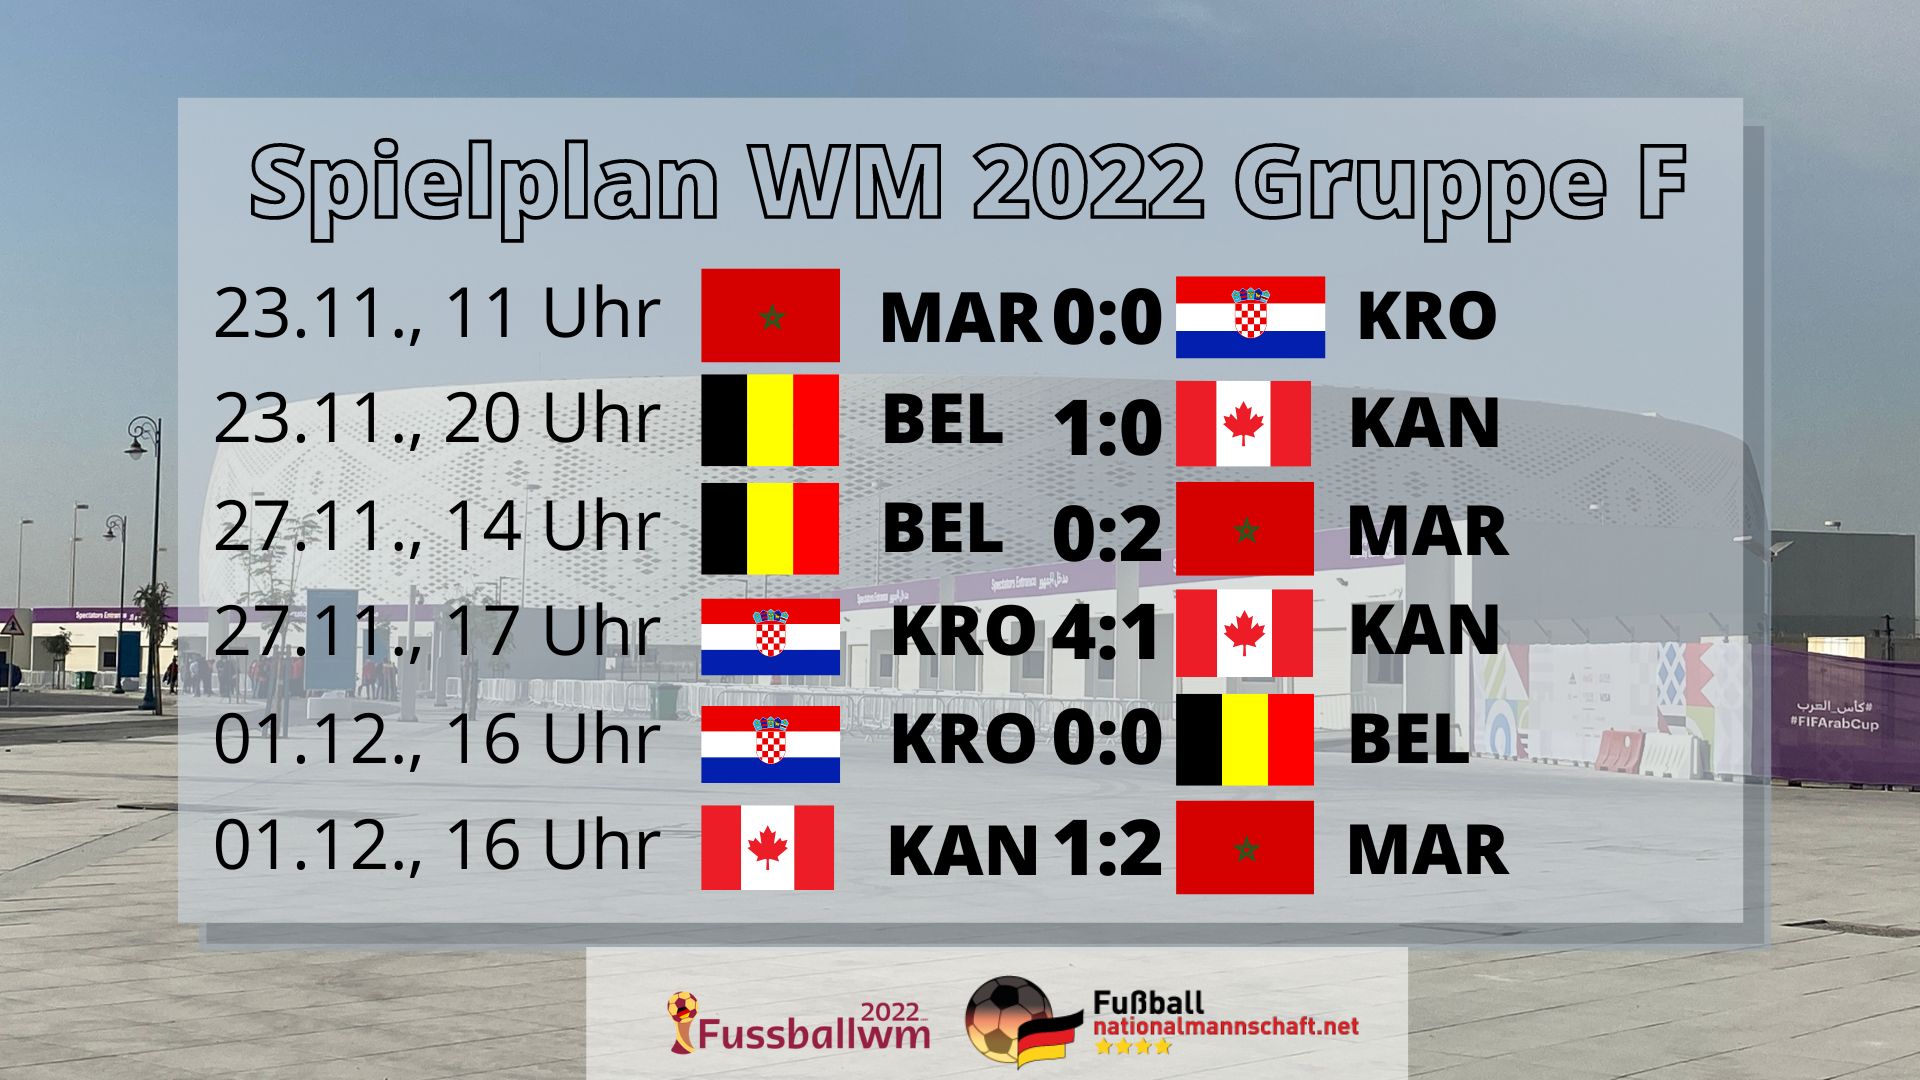 WM 2022 Gruppe F Spielplan and Tabelle mit Belgien